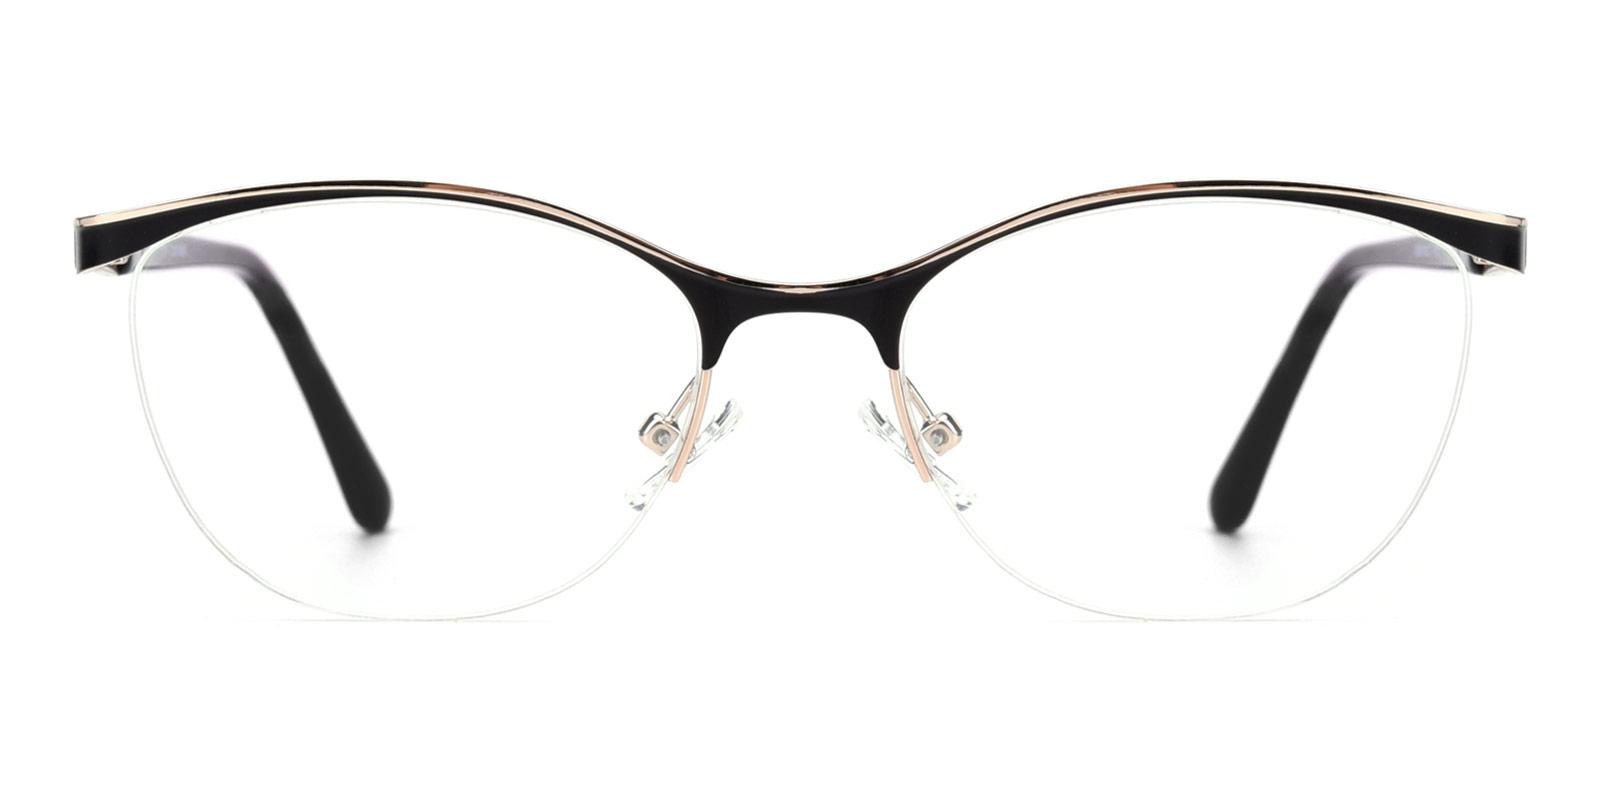 Alexis-Black-Cat / Oval-Metal-Eyeglasses-detail